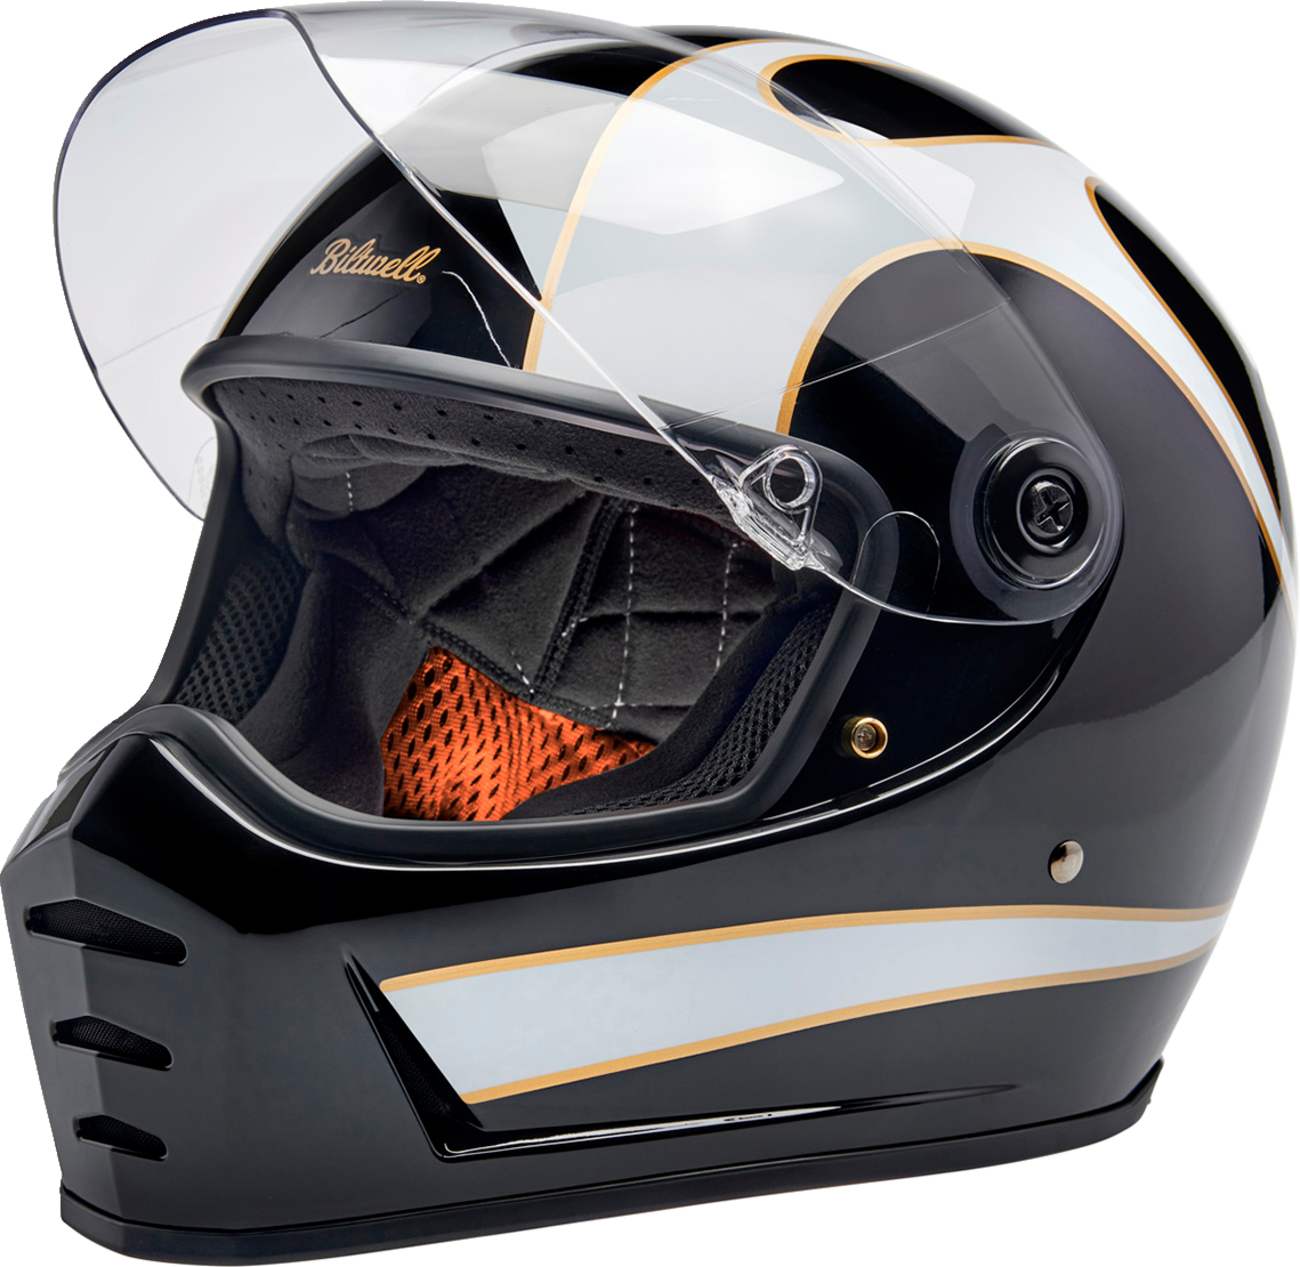 BILTWELL Lane Splitter Helmet - Gloss Black/White Flames - Large 1004-570-504